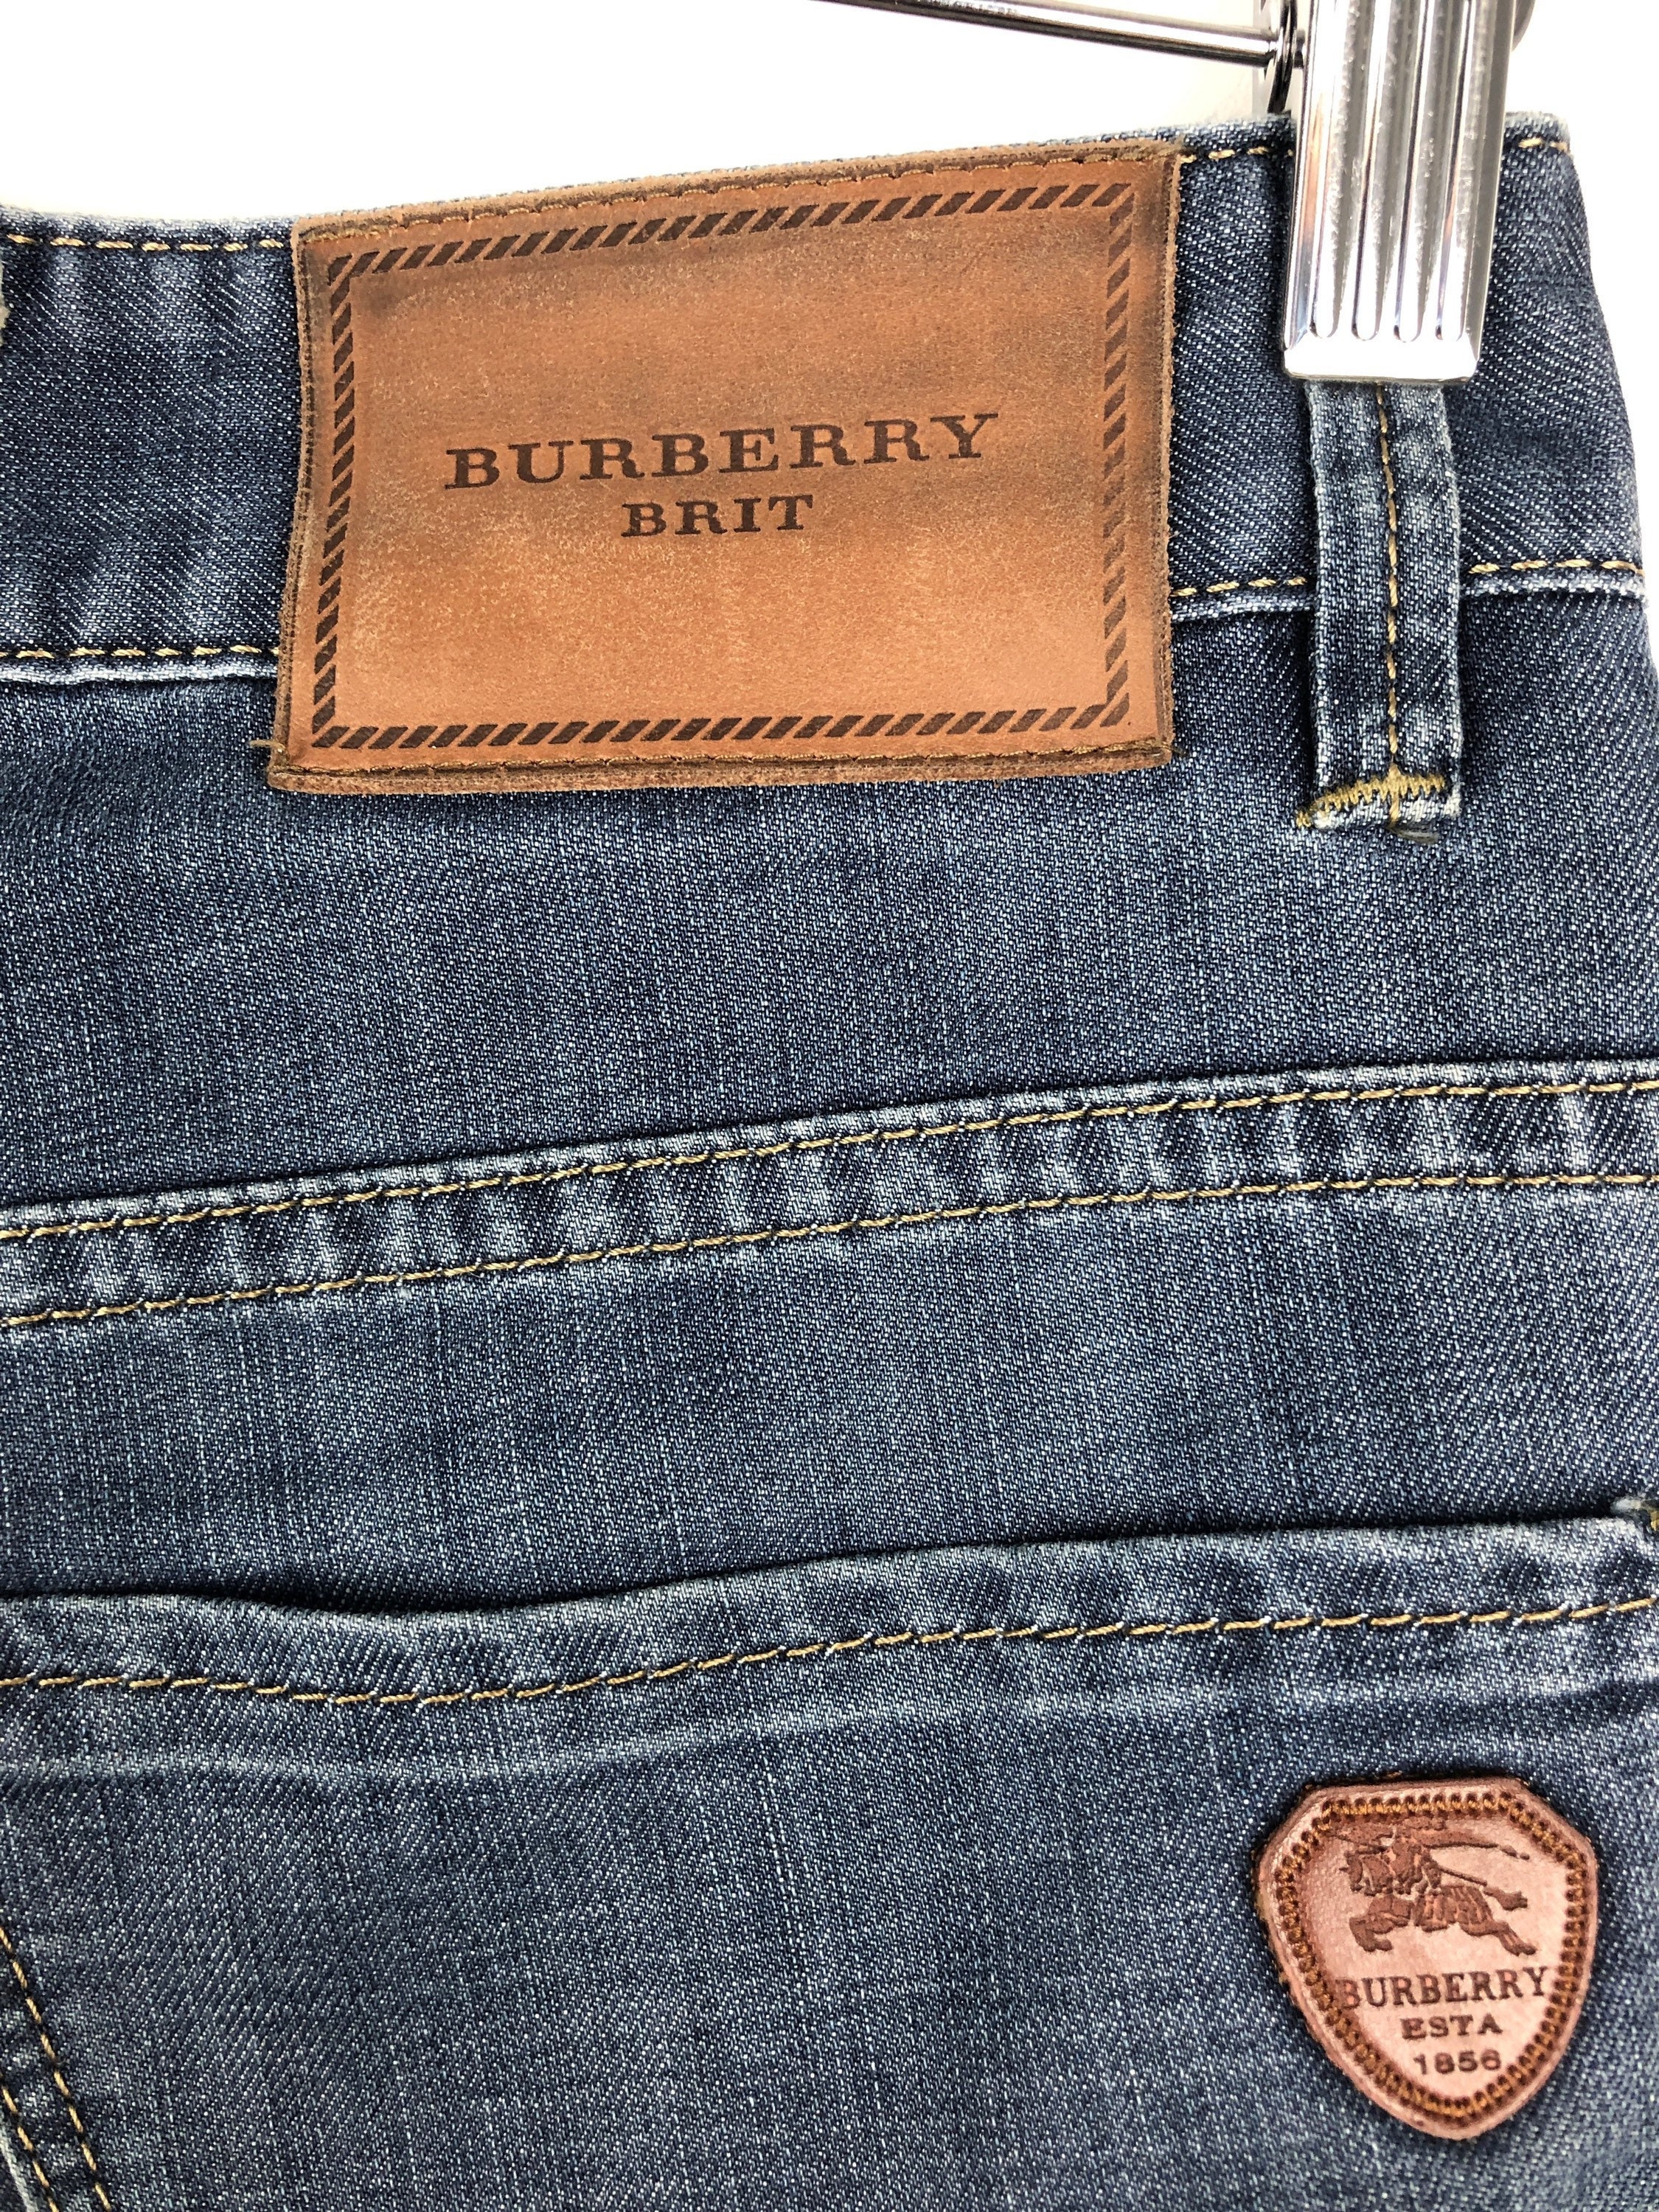 BURBERRY BRIT Vintage Blue Jeans Size Denim Etsy